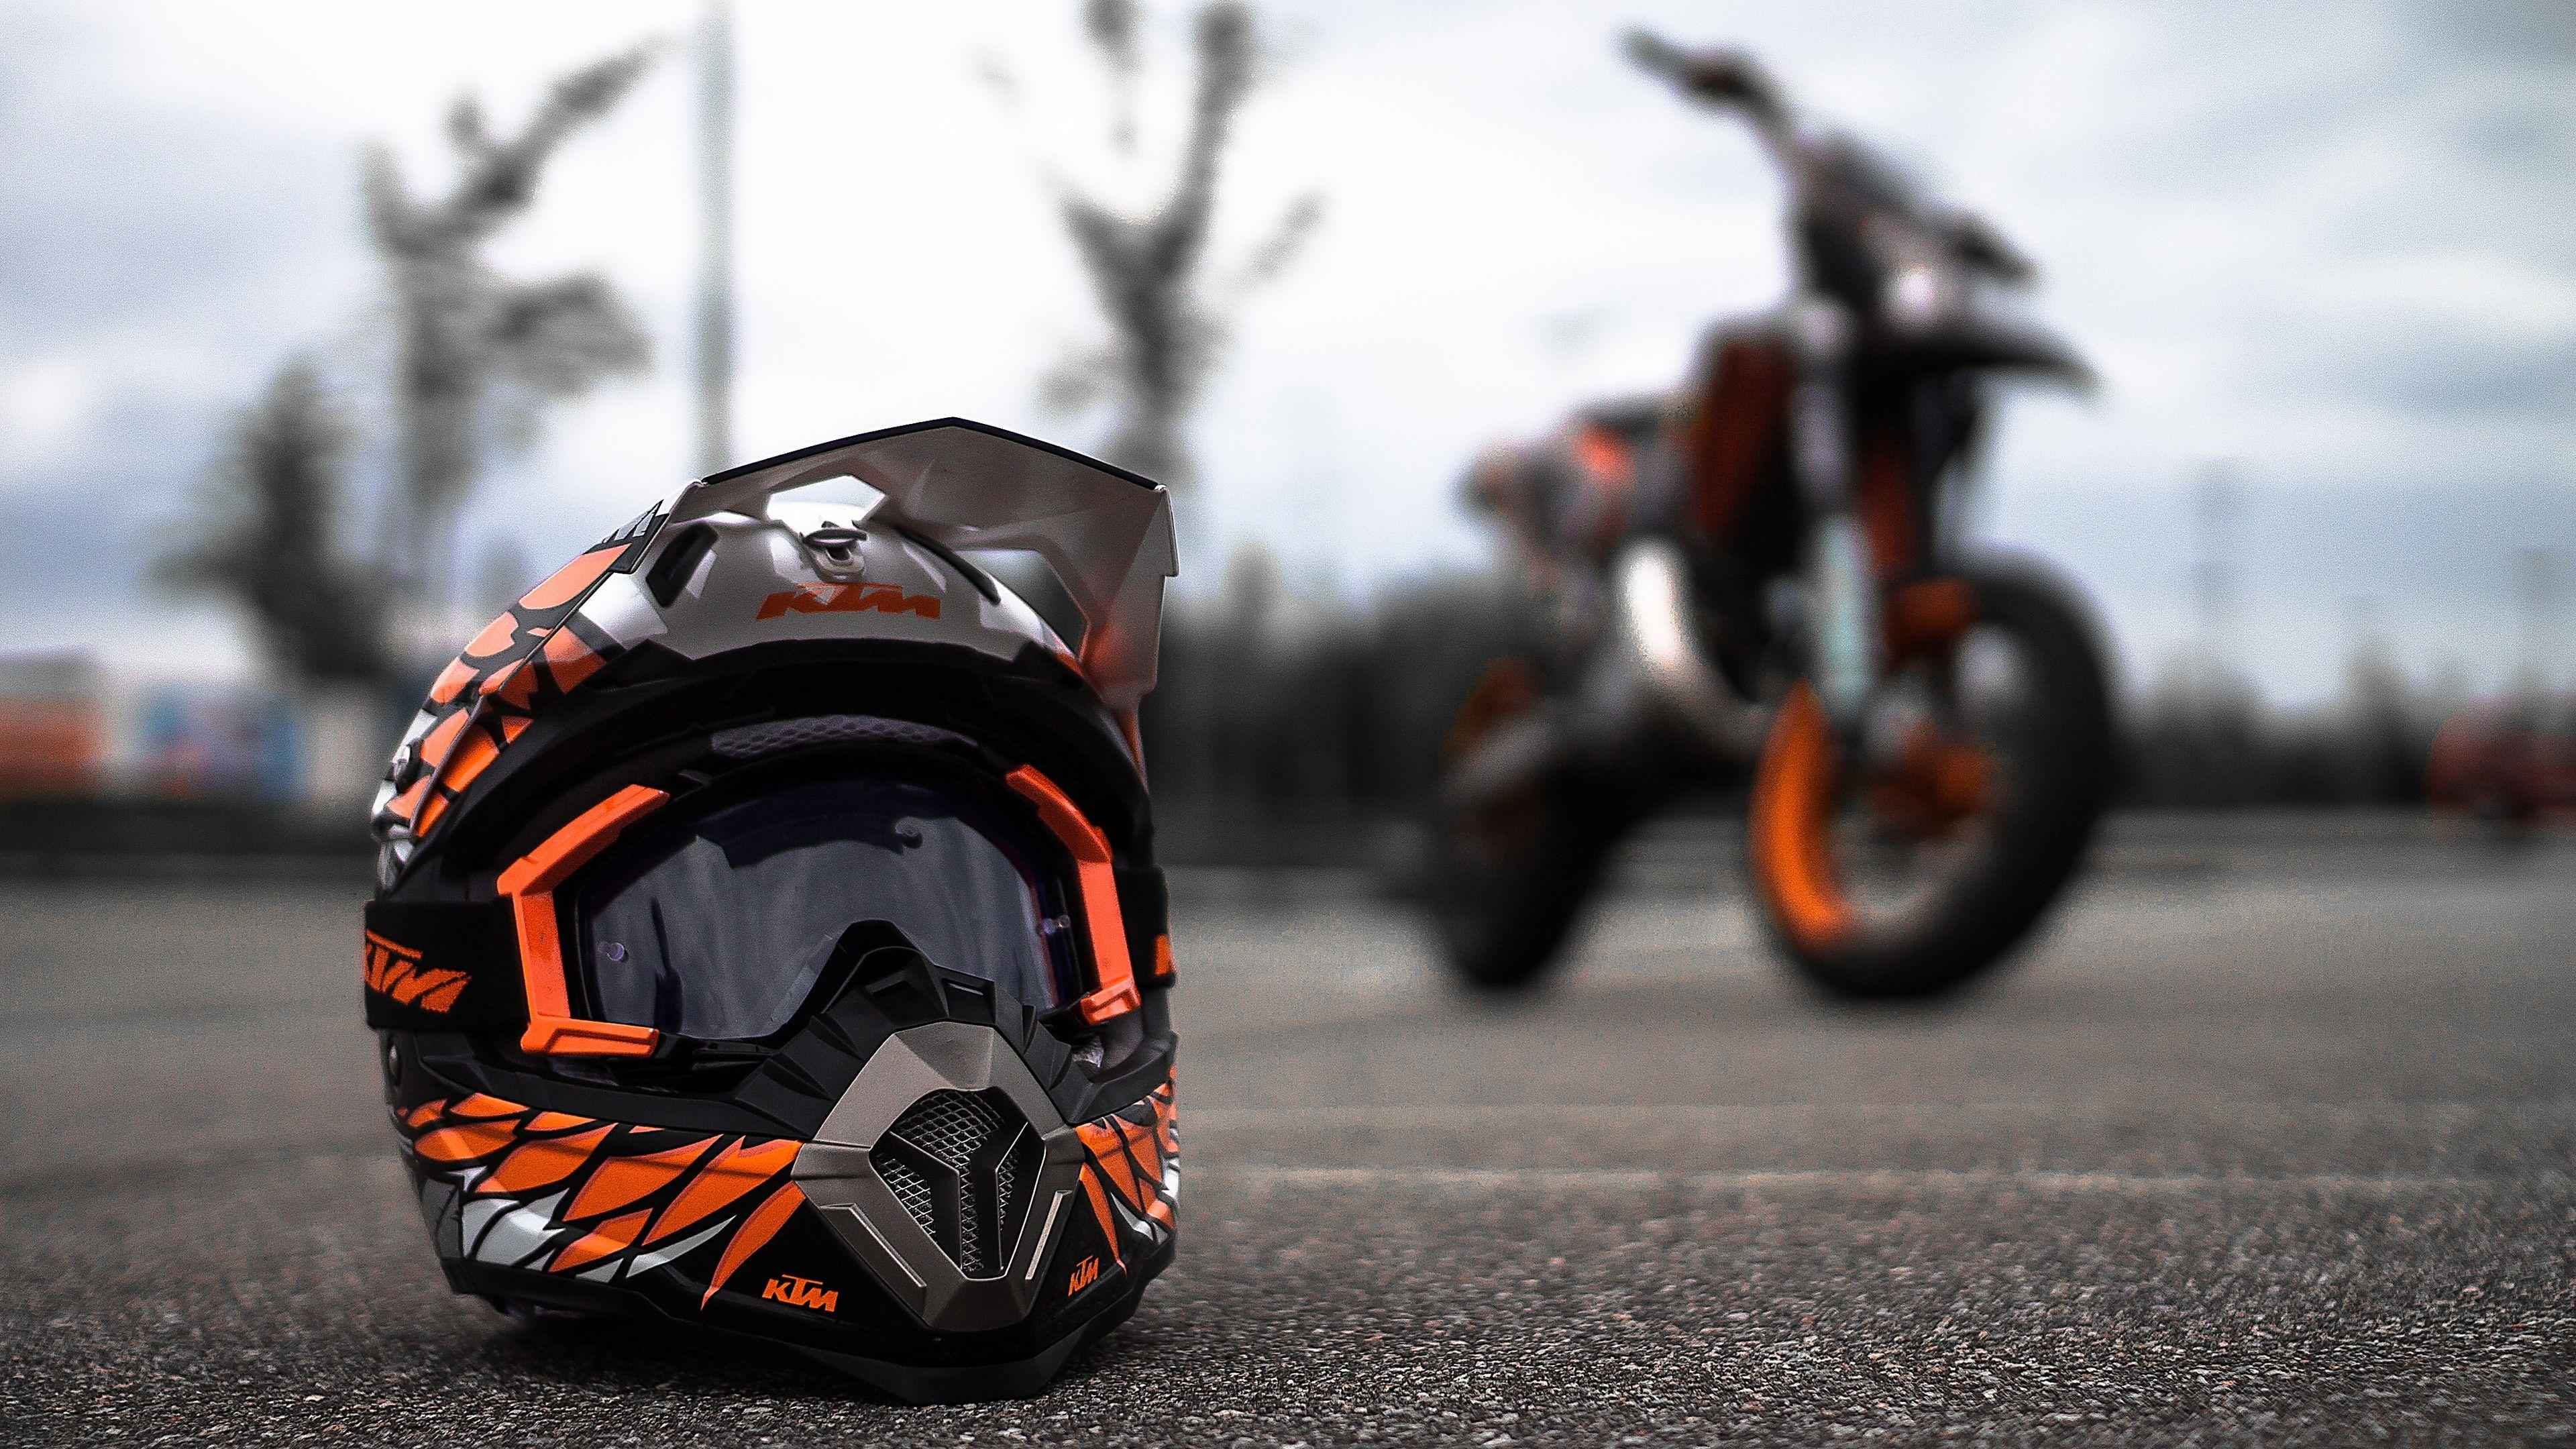 Download wallpaper 4000x6000 motorcyclist helmet motorcycle bike biker  hd background